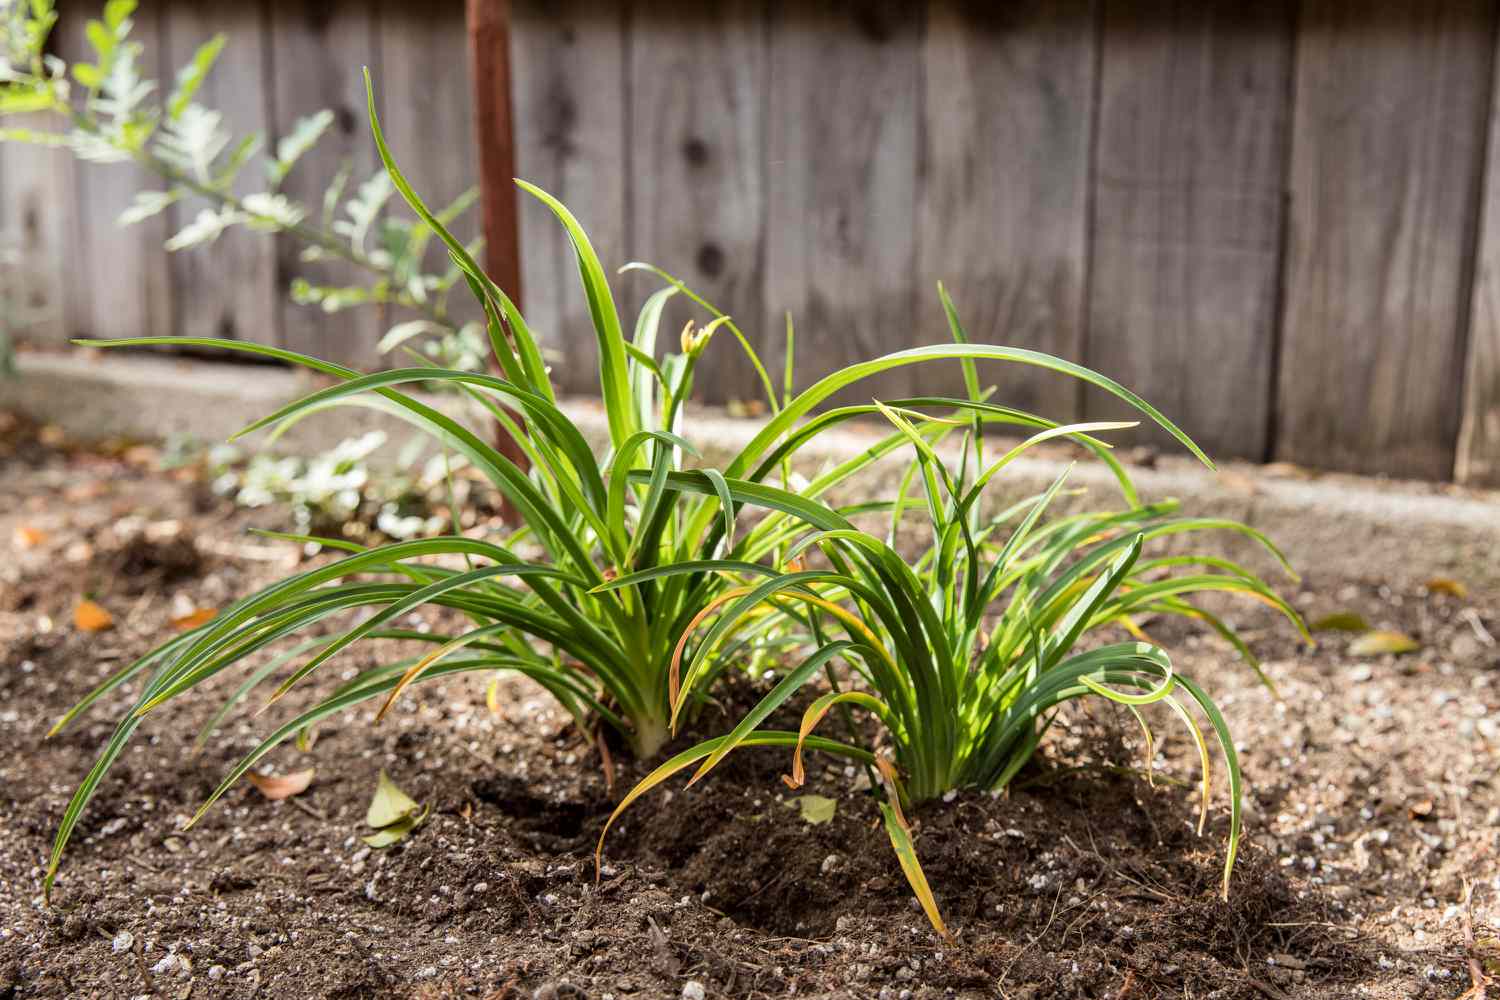 Taglilienpflanzen in den Boden gepflanzt